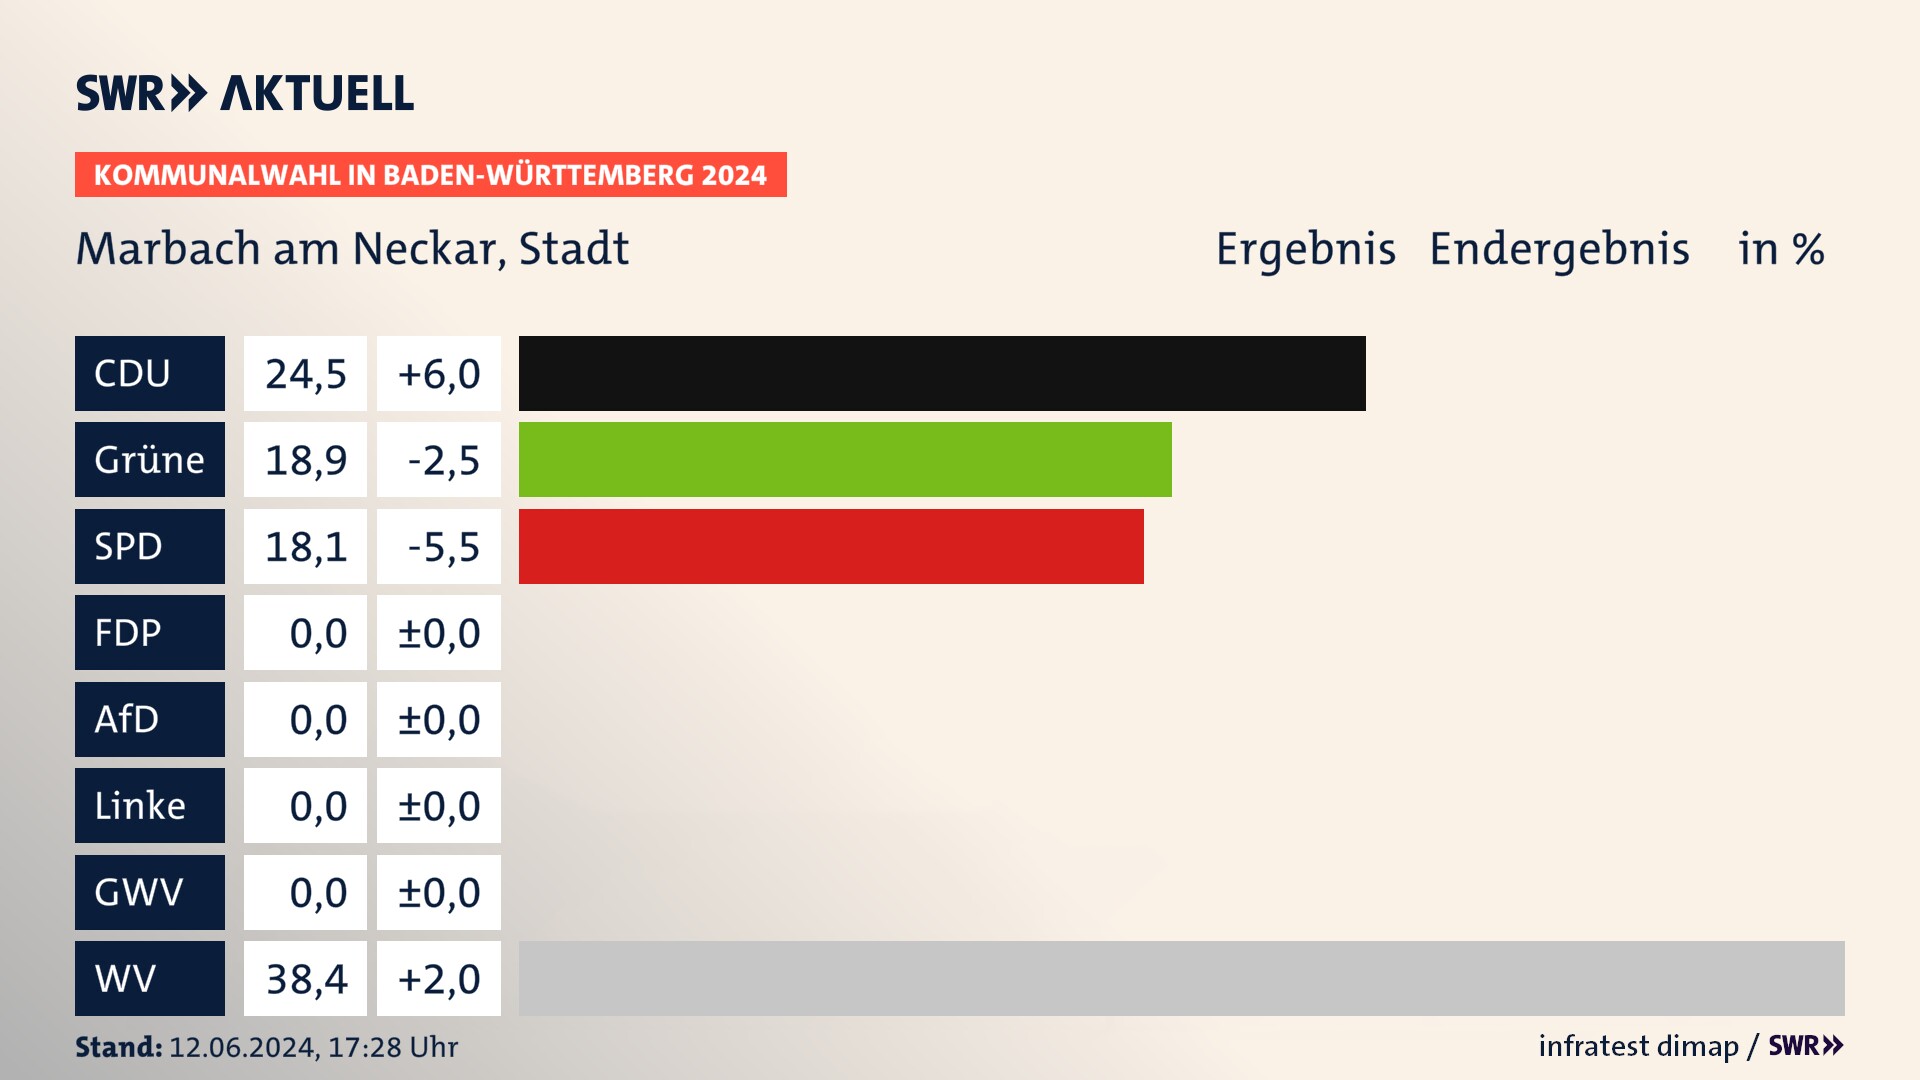 Kommunalwahl 2024 Endergebnis Zweitstimme für Marbach am Neckar. In Marbach am Neckar, Stadt erzielt die CDU 24,5 Prozent der gültigen  Stimmen. Die Grünen landen bei 18,9 Prozent. Die SPD erreicht 18,1 Prozent. Die Wählervereinigungen kommen auf 38,4 Prozent.